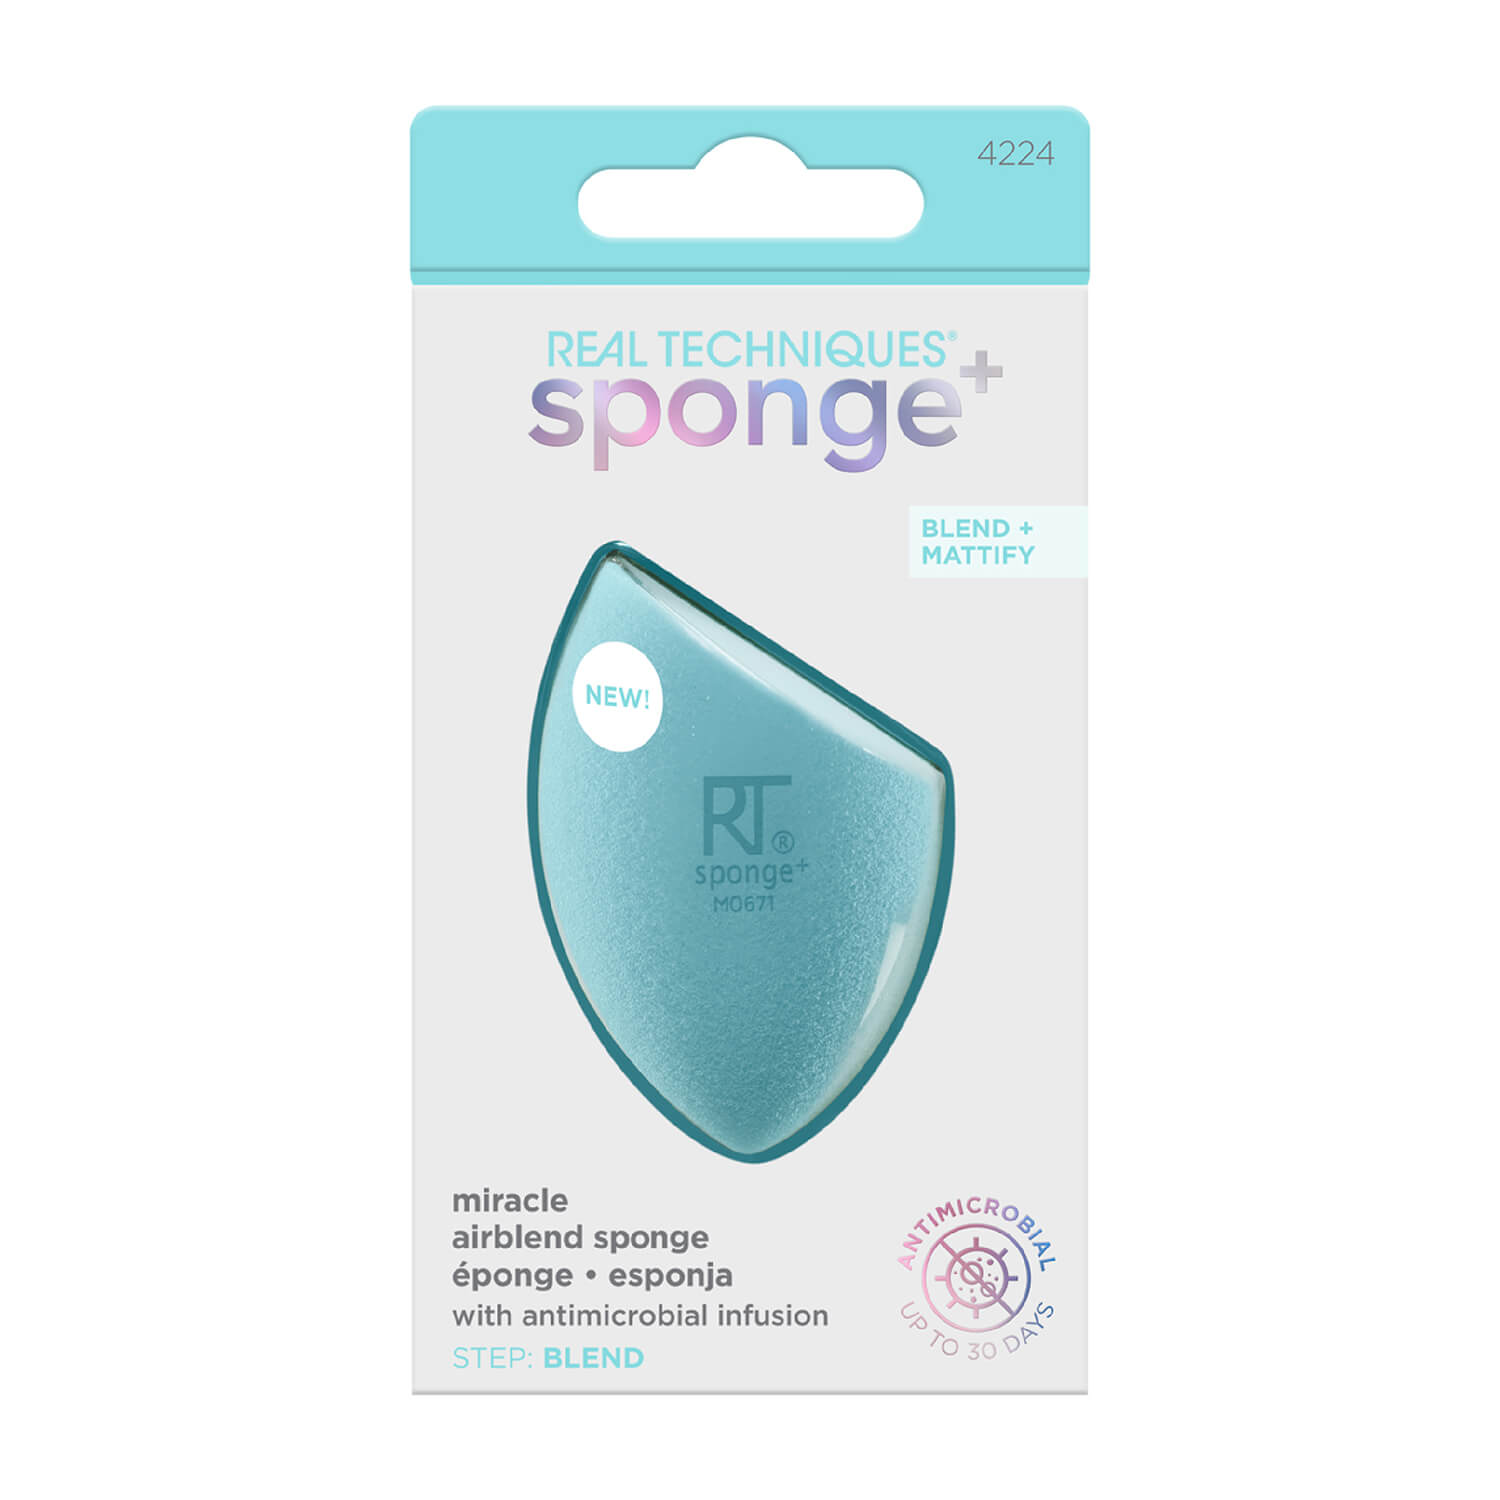 Real Techniques Sponge+ Air Blend Sponge 1 Shaws Department Stores